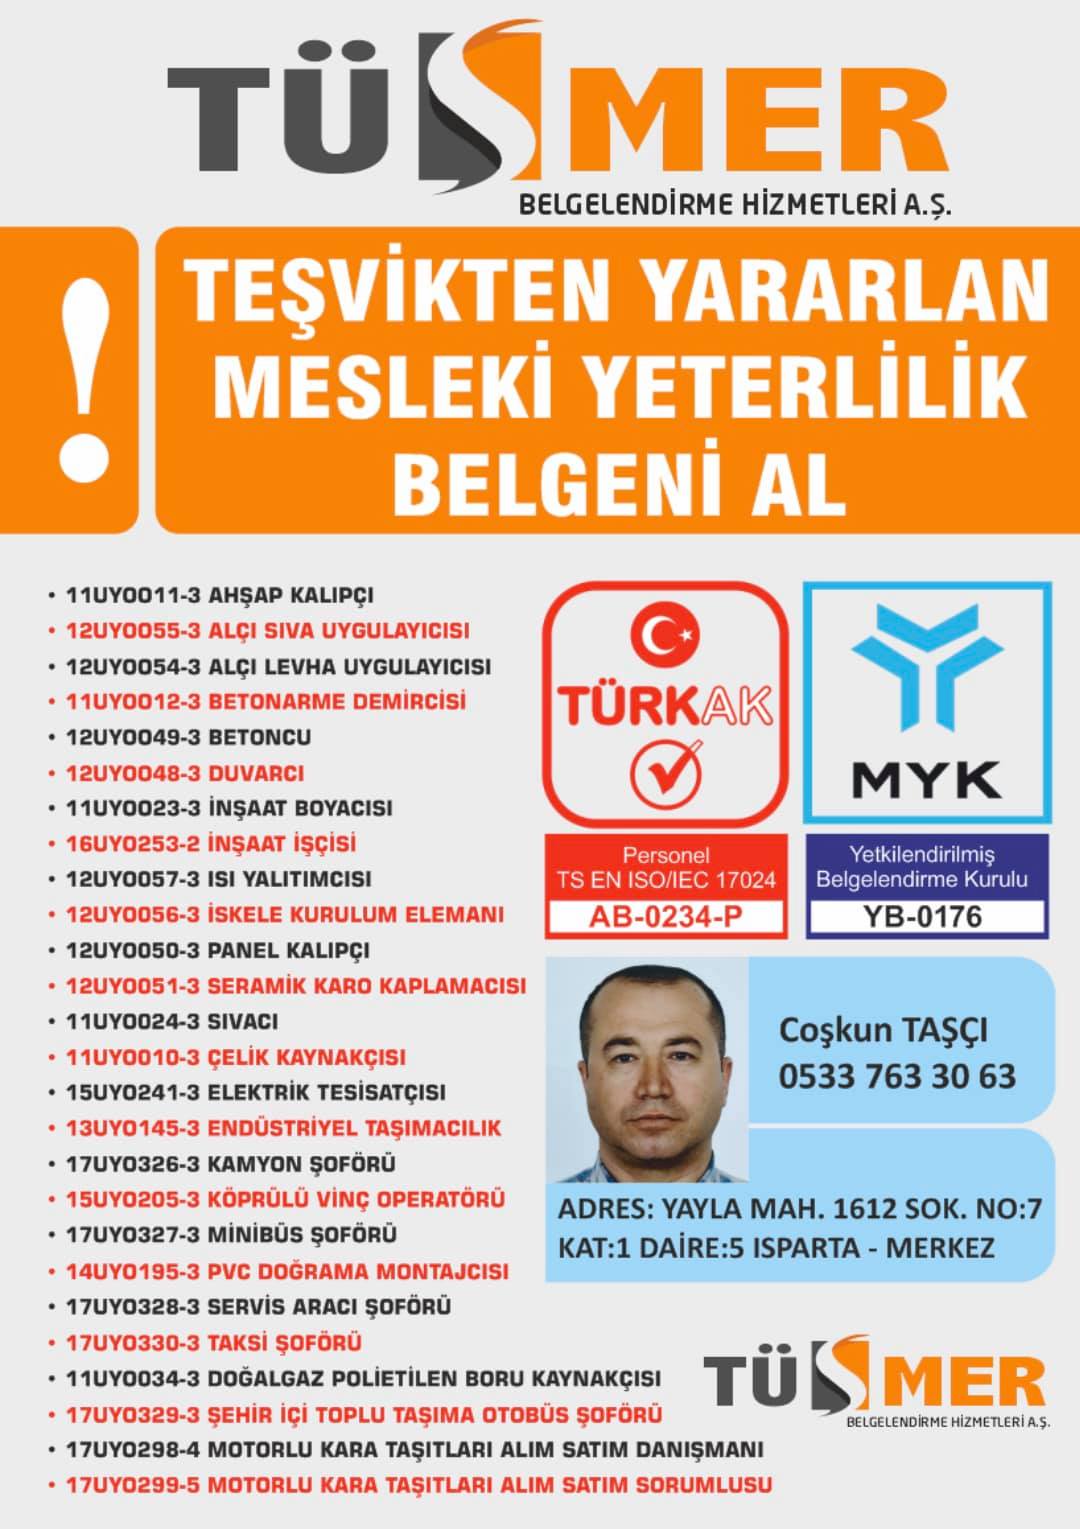 MYK MESLEKİ YETERLİLİK BELGESİ Göztepe Kadıköy İstanbul